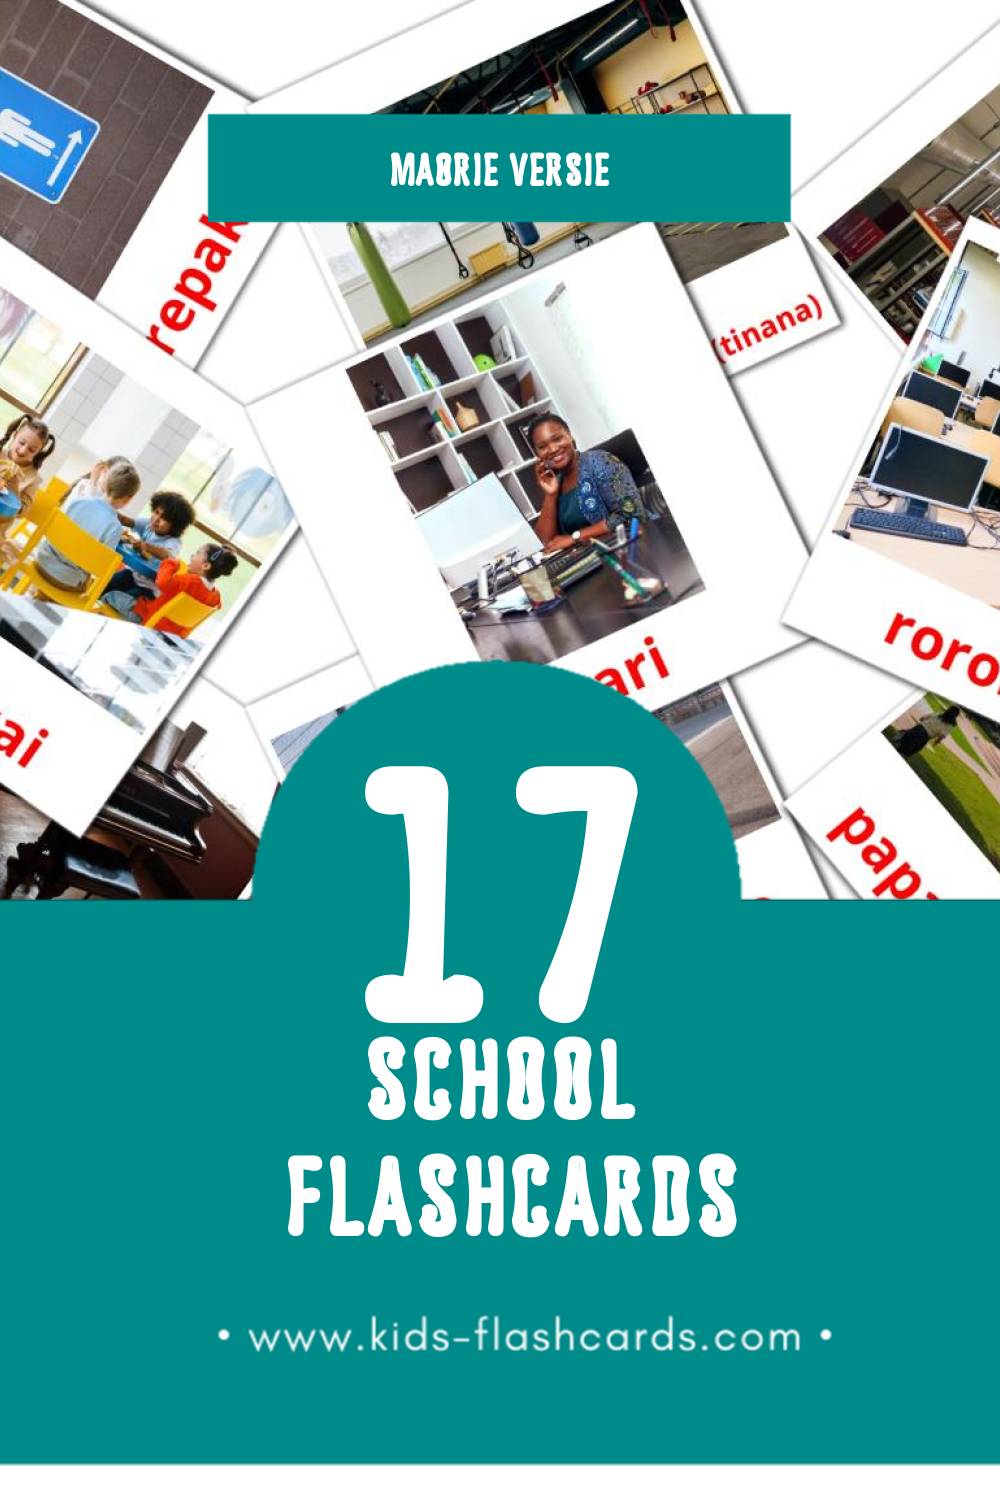 Visuele Skool Flashcards voor Kleuters (17 kaarten in het Maori)